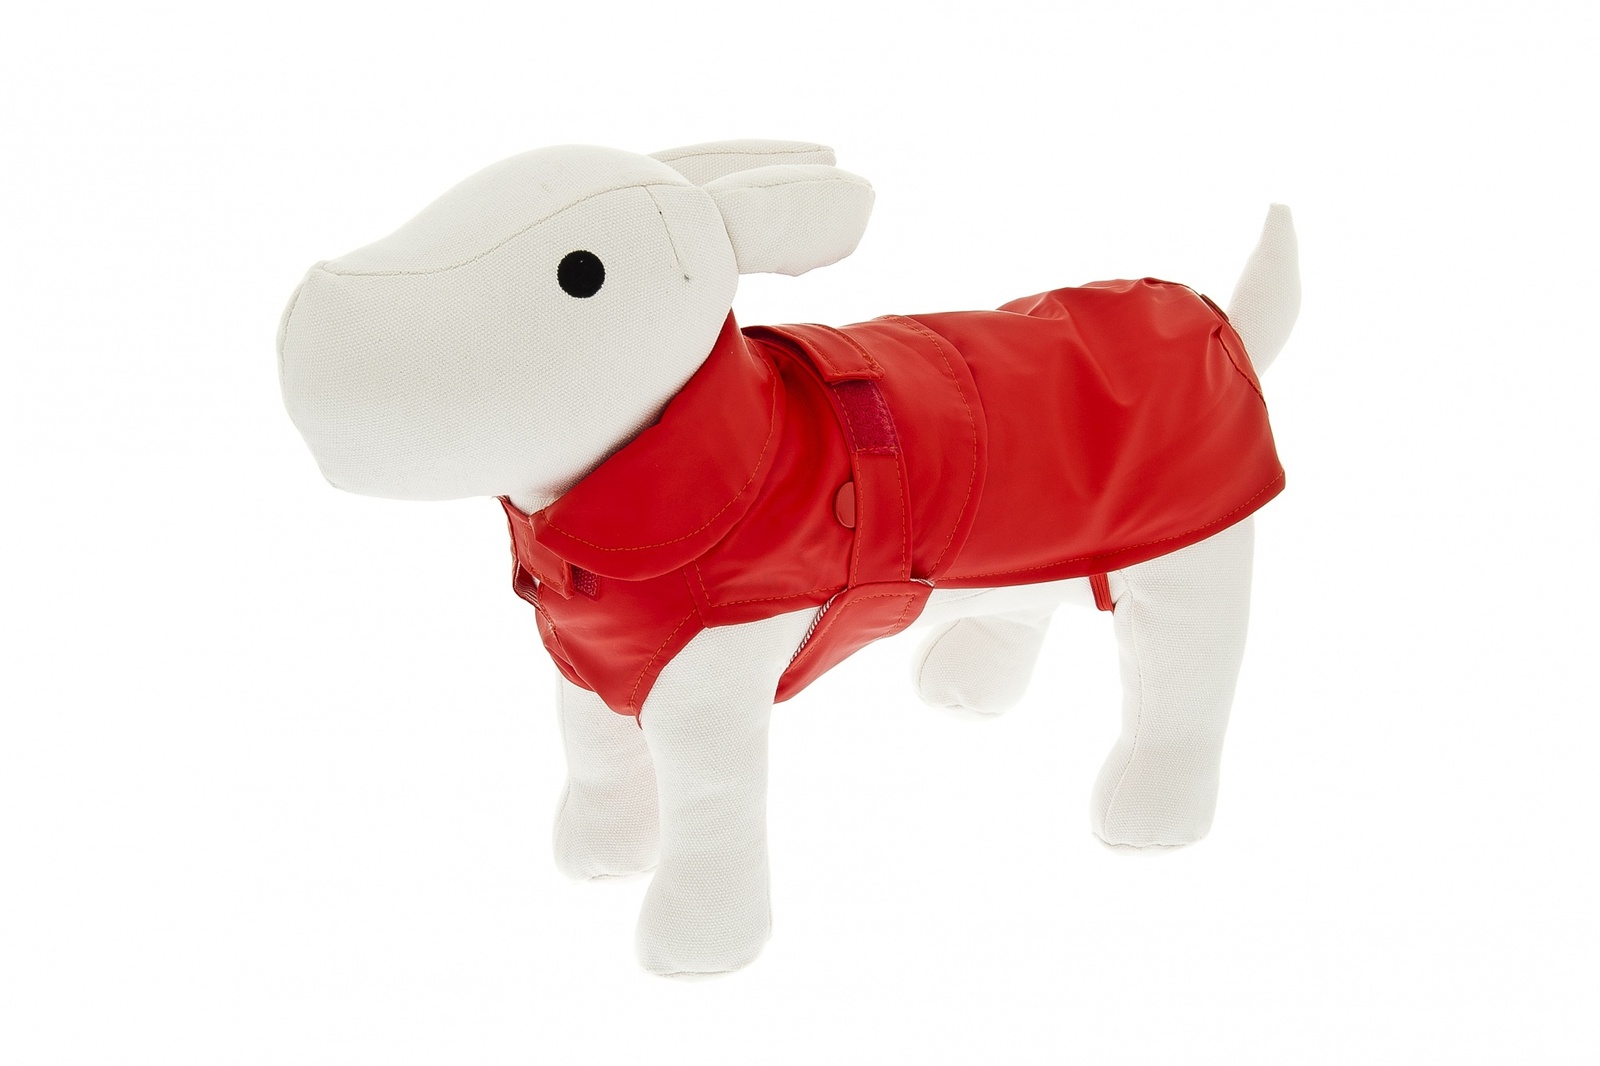 Ferribiella одежда Ferribiella одежда утепленный плащ-дождевик со съемным подкладом Классика, красный (27 см) 46524